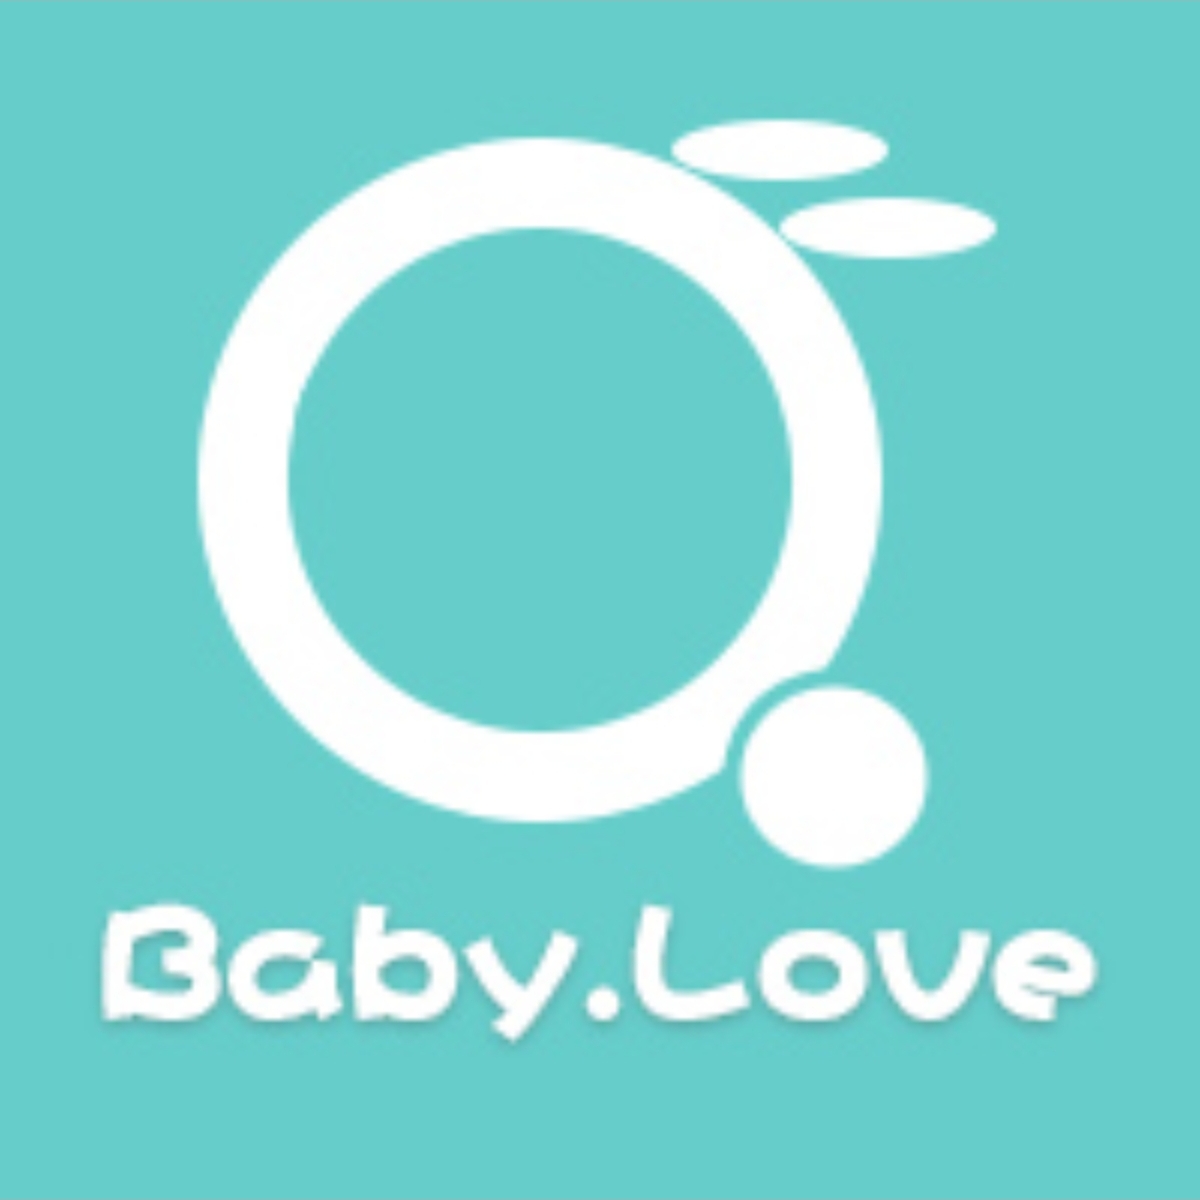 Babylove爱婴宝母婴官方店